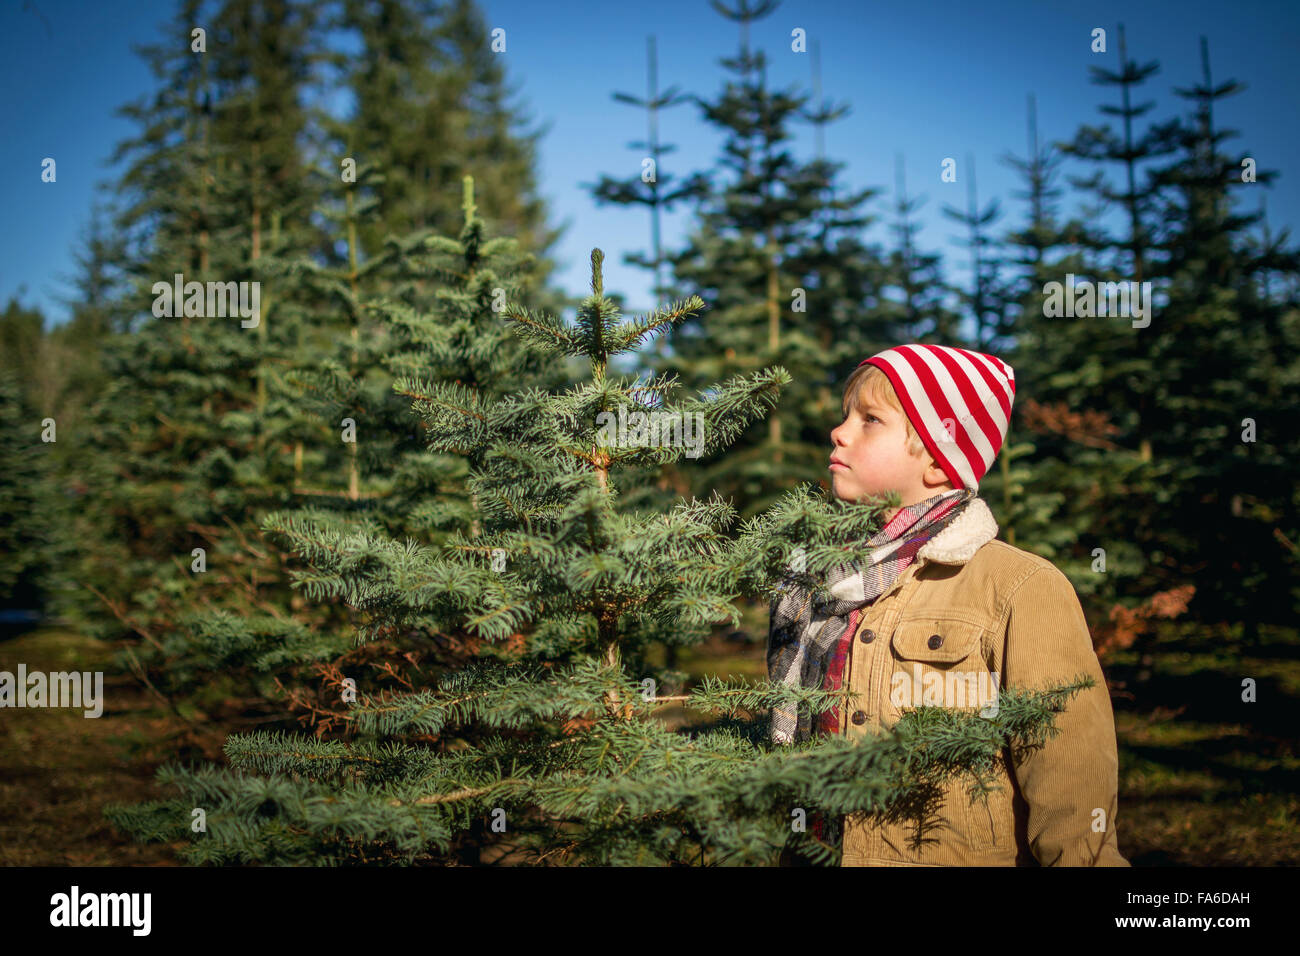 Jeune garçon choisissant une ferme à l'arbre de Noël Banque D'Images